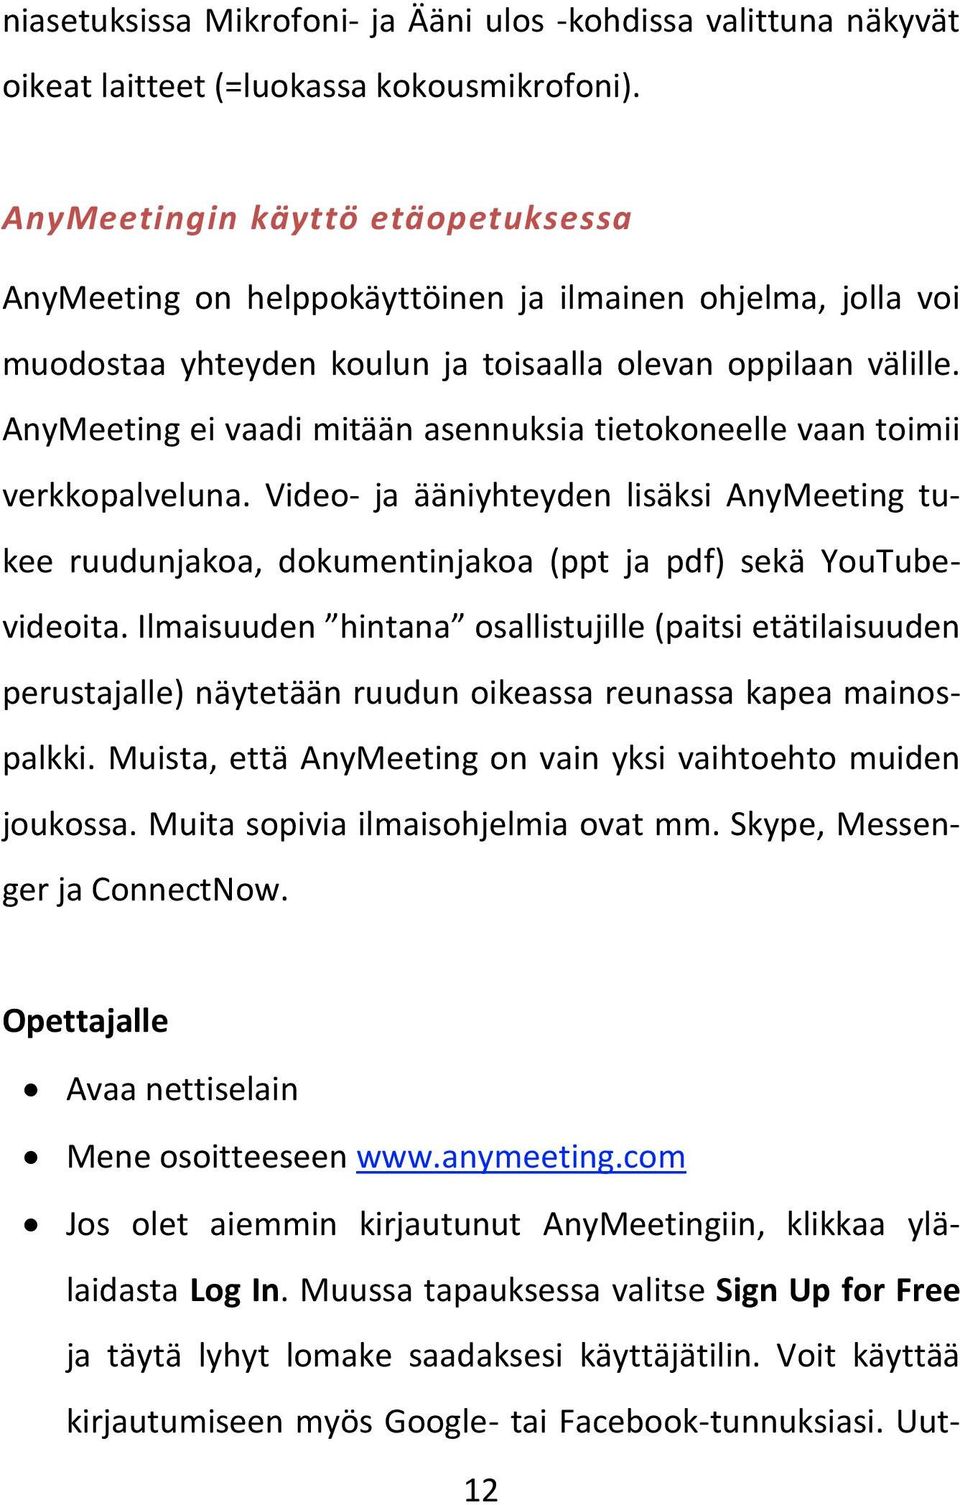 AnyMeeting ei vaadi mitään asennuksia tietokoneelle vaan toimii verkkopalveluna. Video- ja ääniyhteyden lisäksi AnyMeeting tukee ruudunjakoa, dokumentinjakoa (ppt ja pdf) sekä YouTubevideoita.